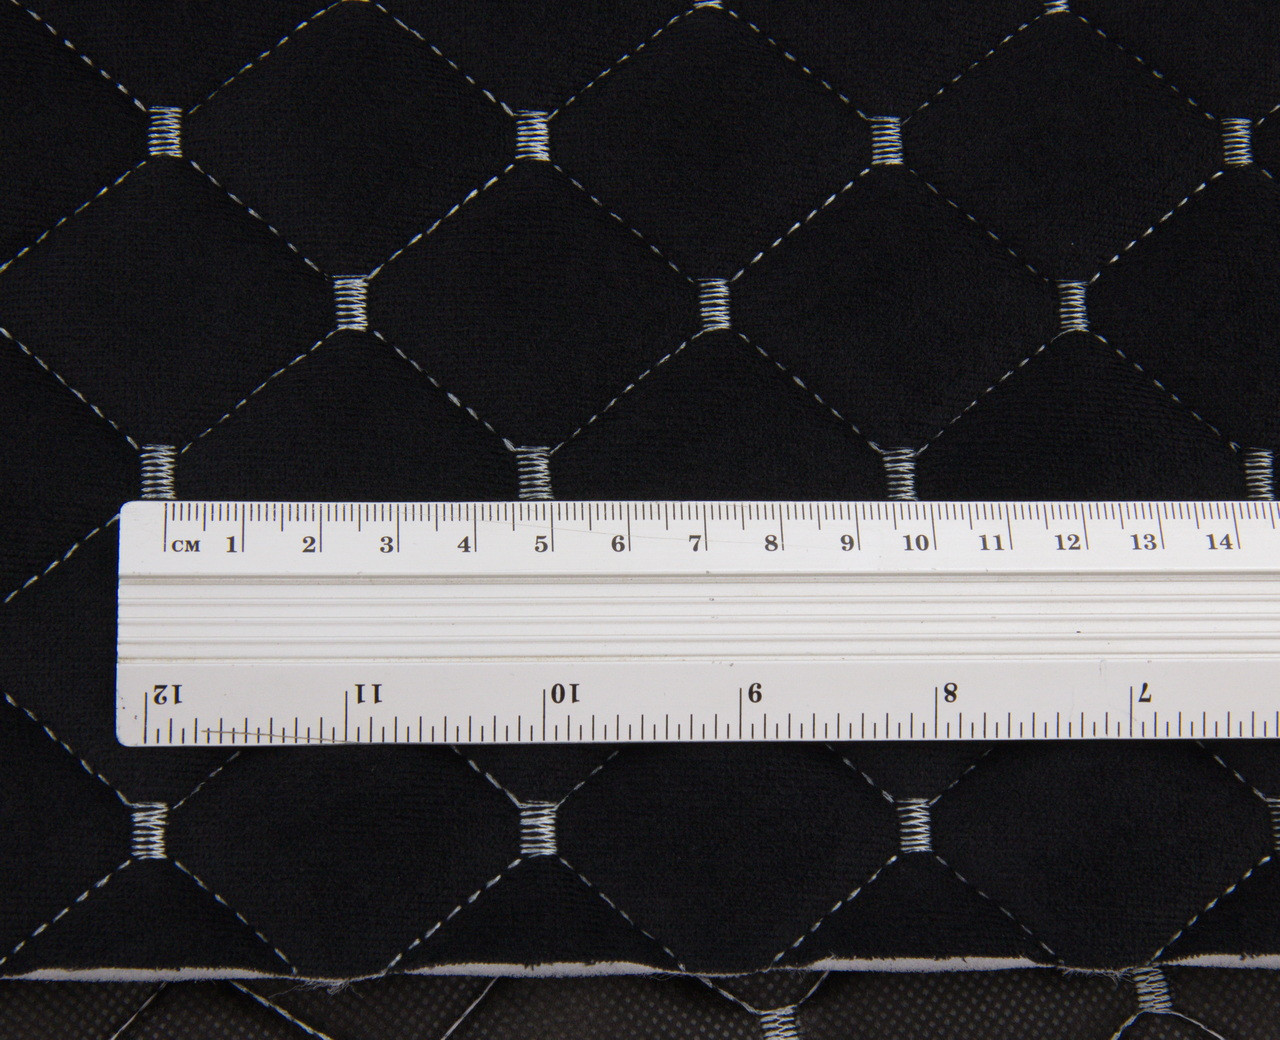 Велюр стеганый черный «Ромб» (прошитый светло-серой нитью) на поролоне 7мм, подложка флизелин, ширина 1,35м детальная фотка